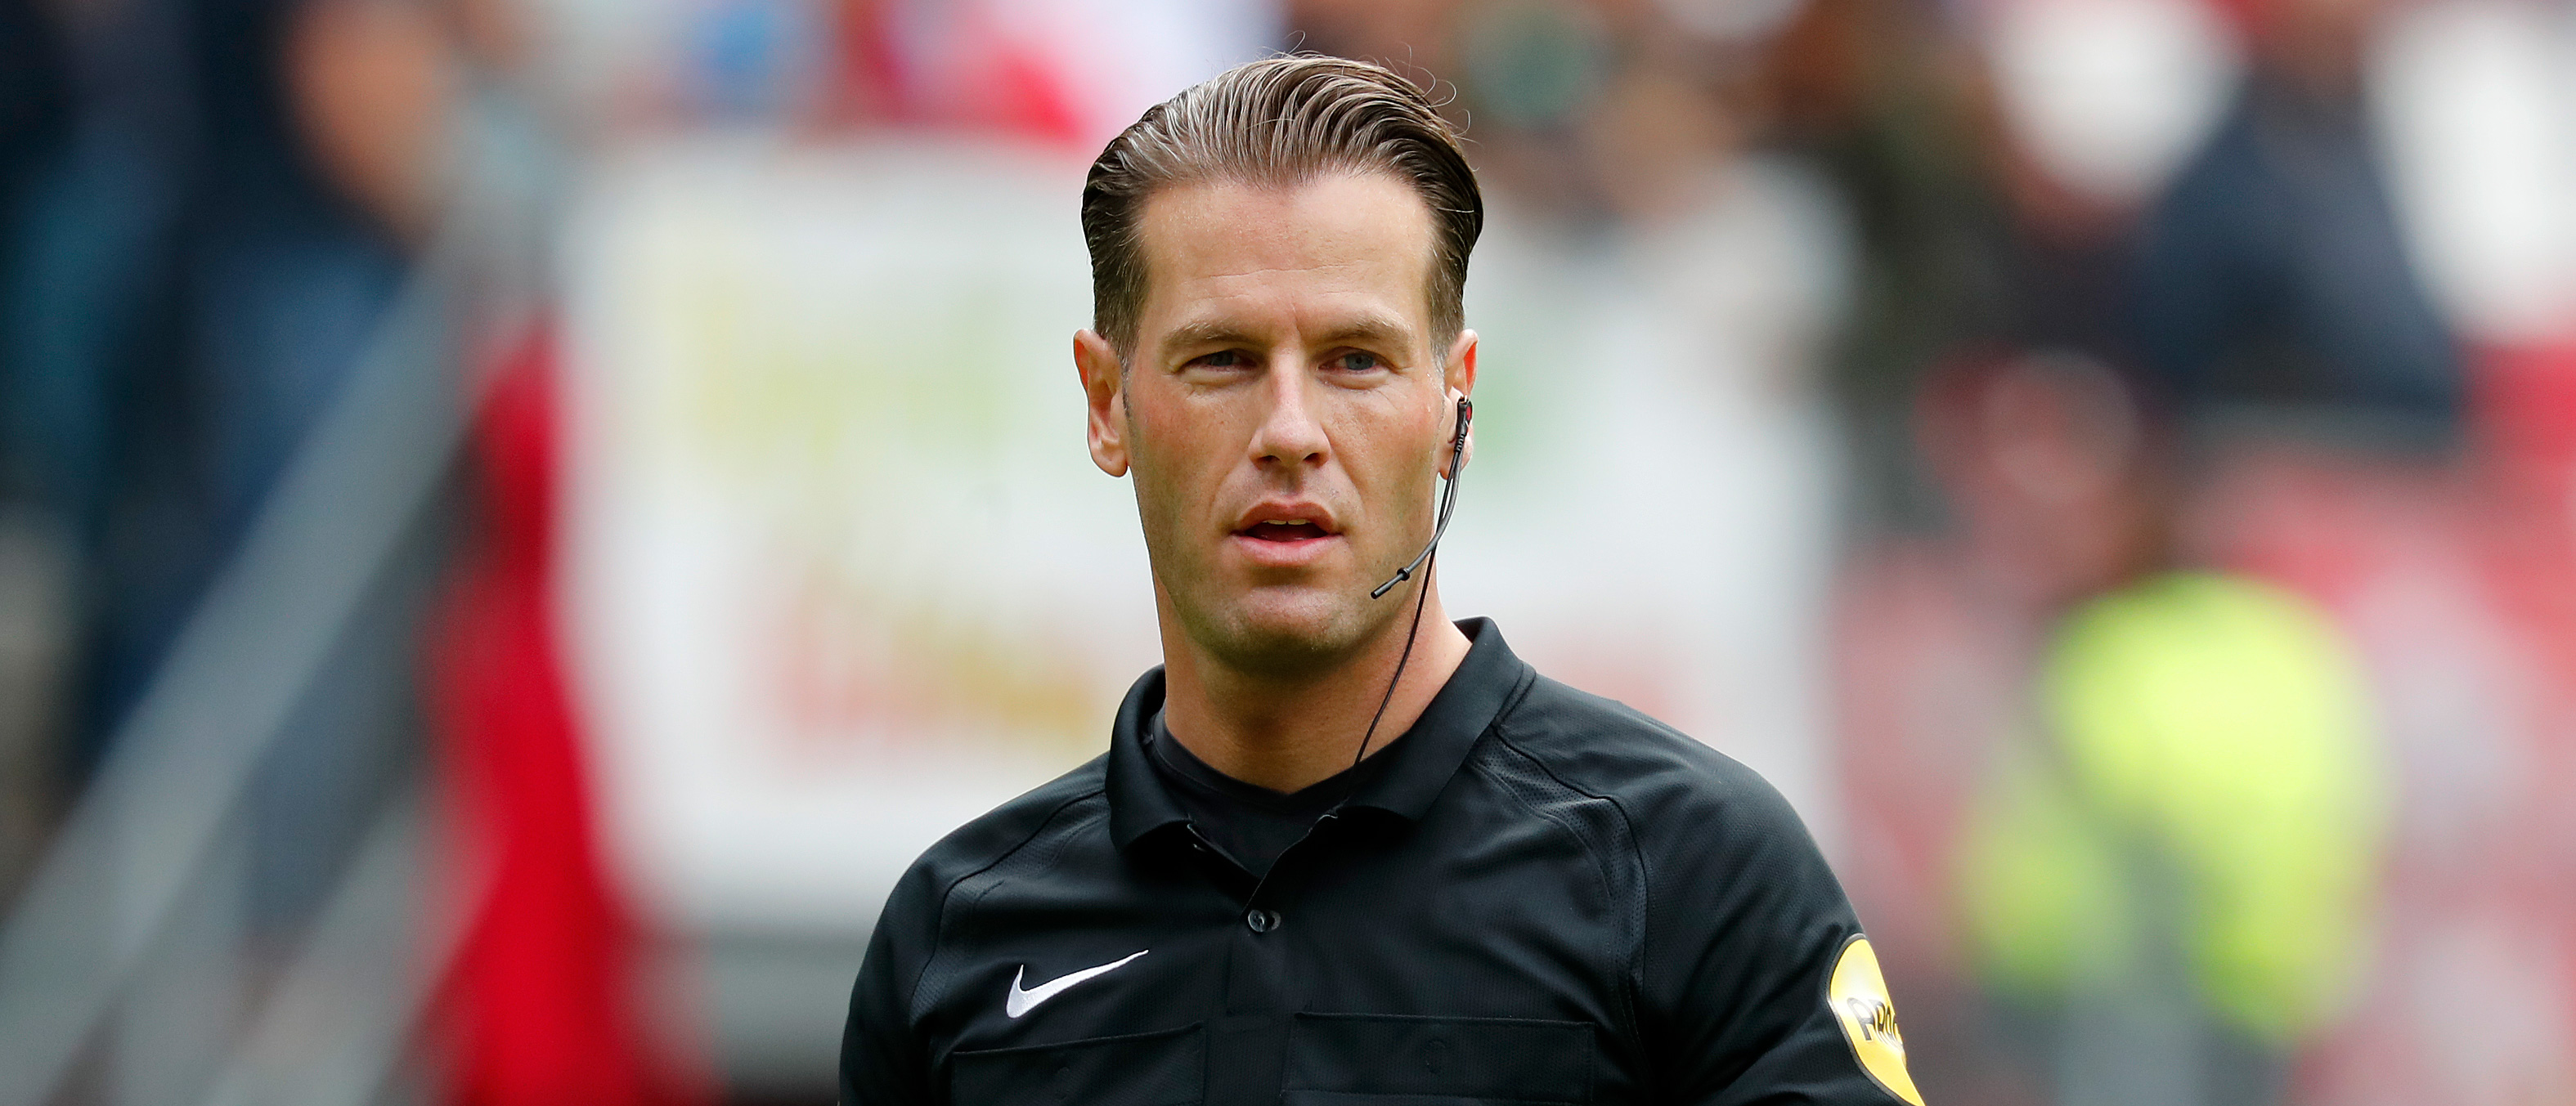 Danny Makkelie leidt Vitesse - FC Utrecht